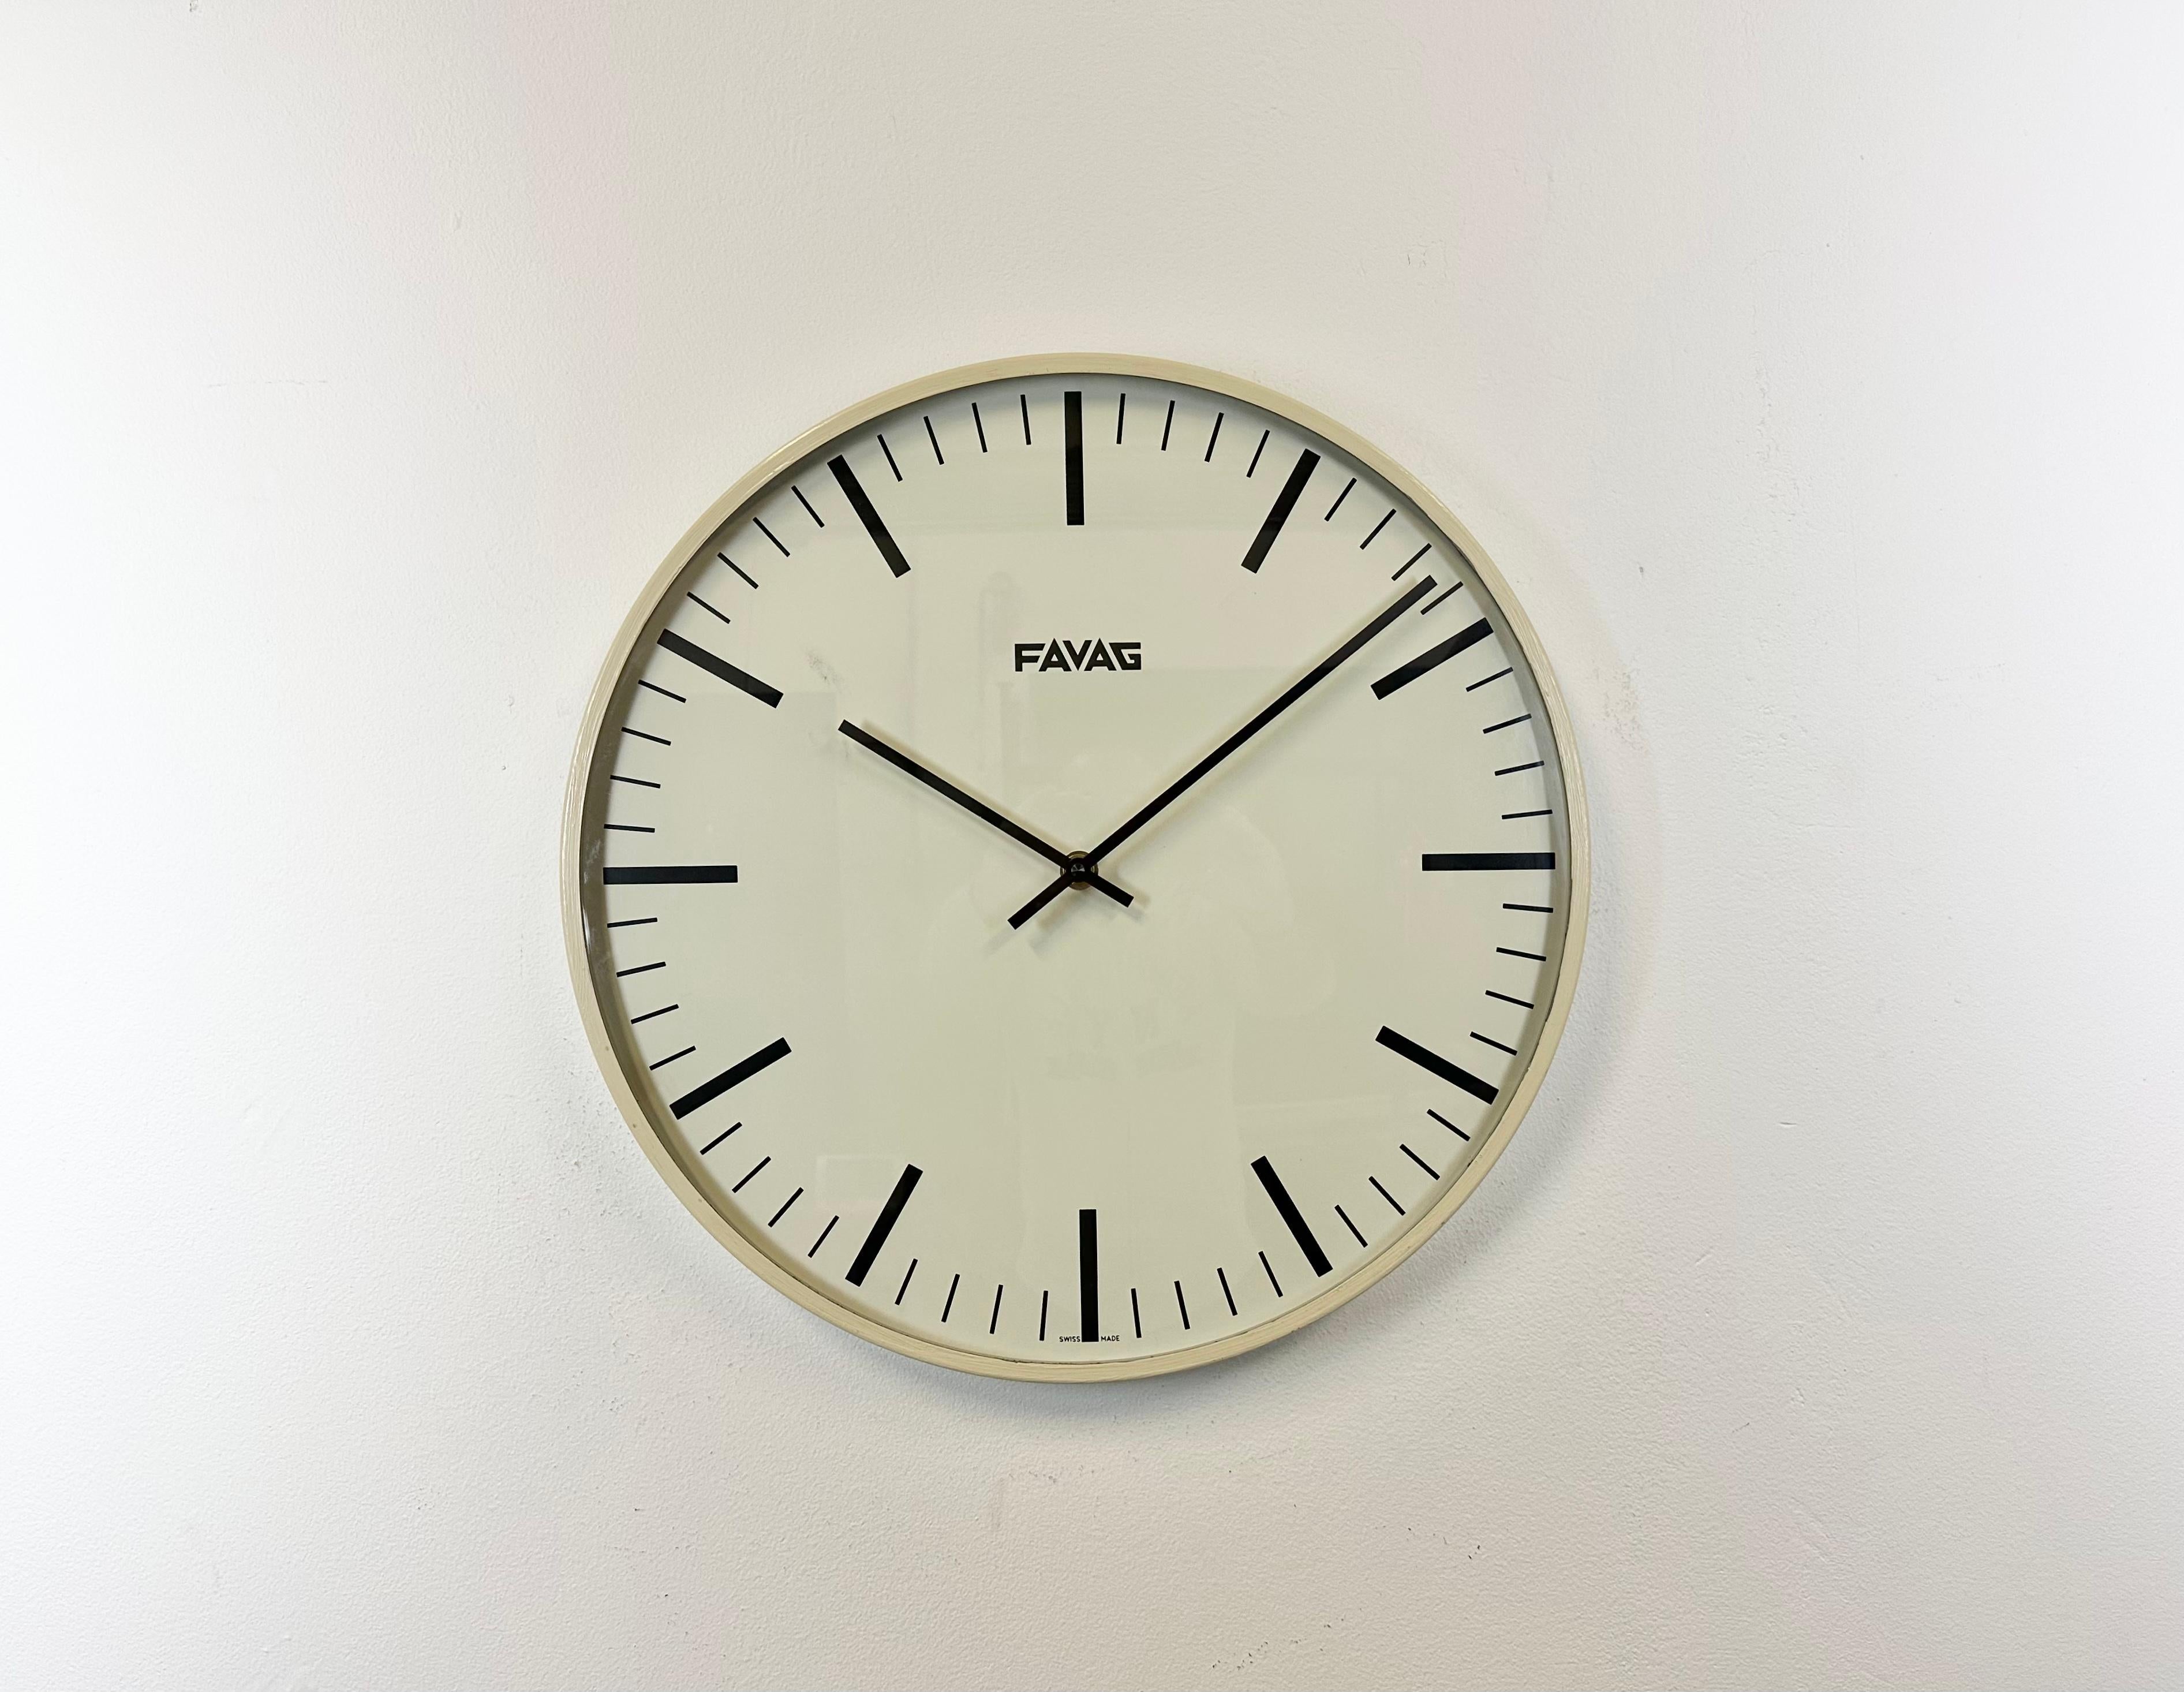 Industrielle Wanduhr, hergestellt von Favag in der Schweiz in den 1970er Jahren. Sie hat einen beigen Eisenrahmen, ein Aluminiumzifferblatt und -zeiger sowie eine gewölbte Klarglasabdeckung. Das Stück wurde in ein batteriebetriebenes Uhrwerk